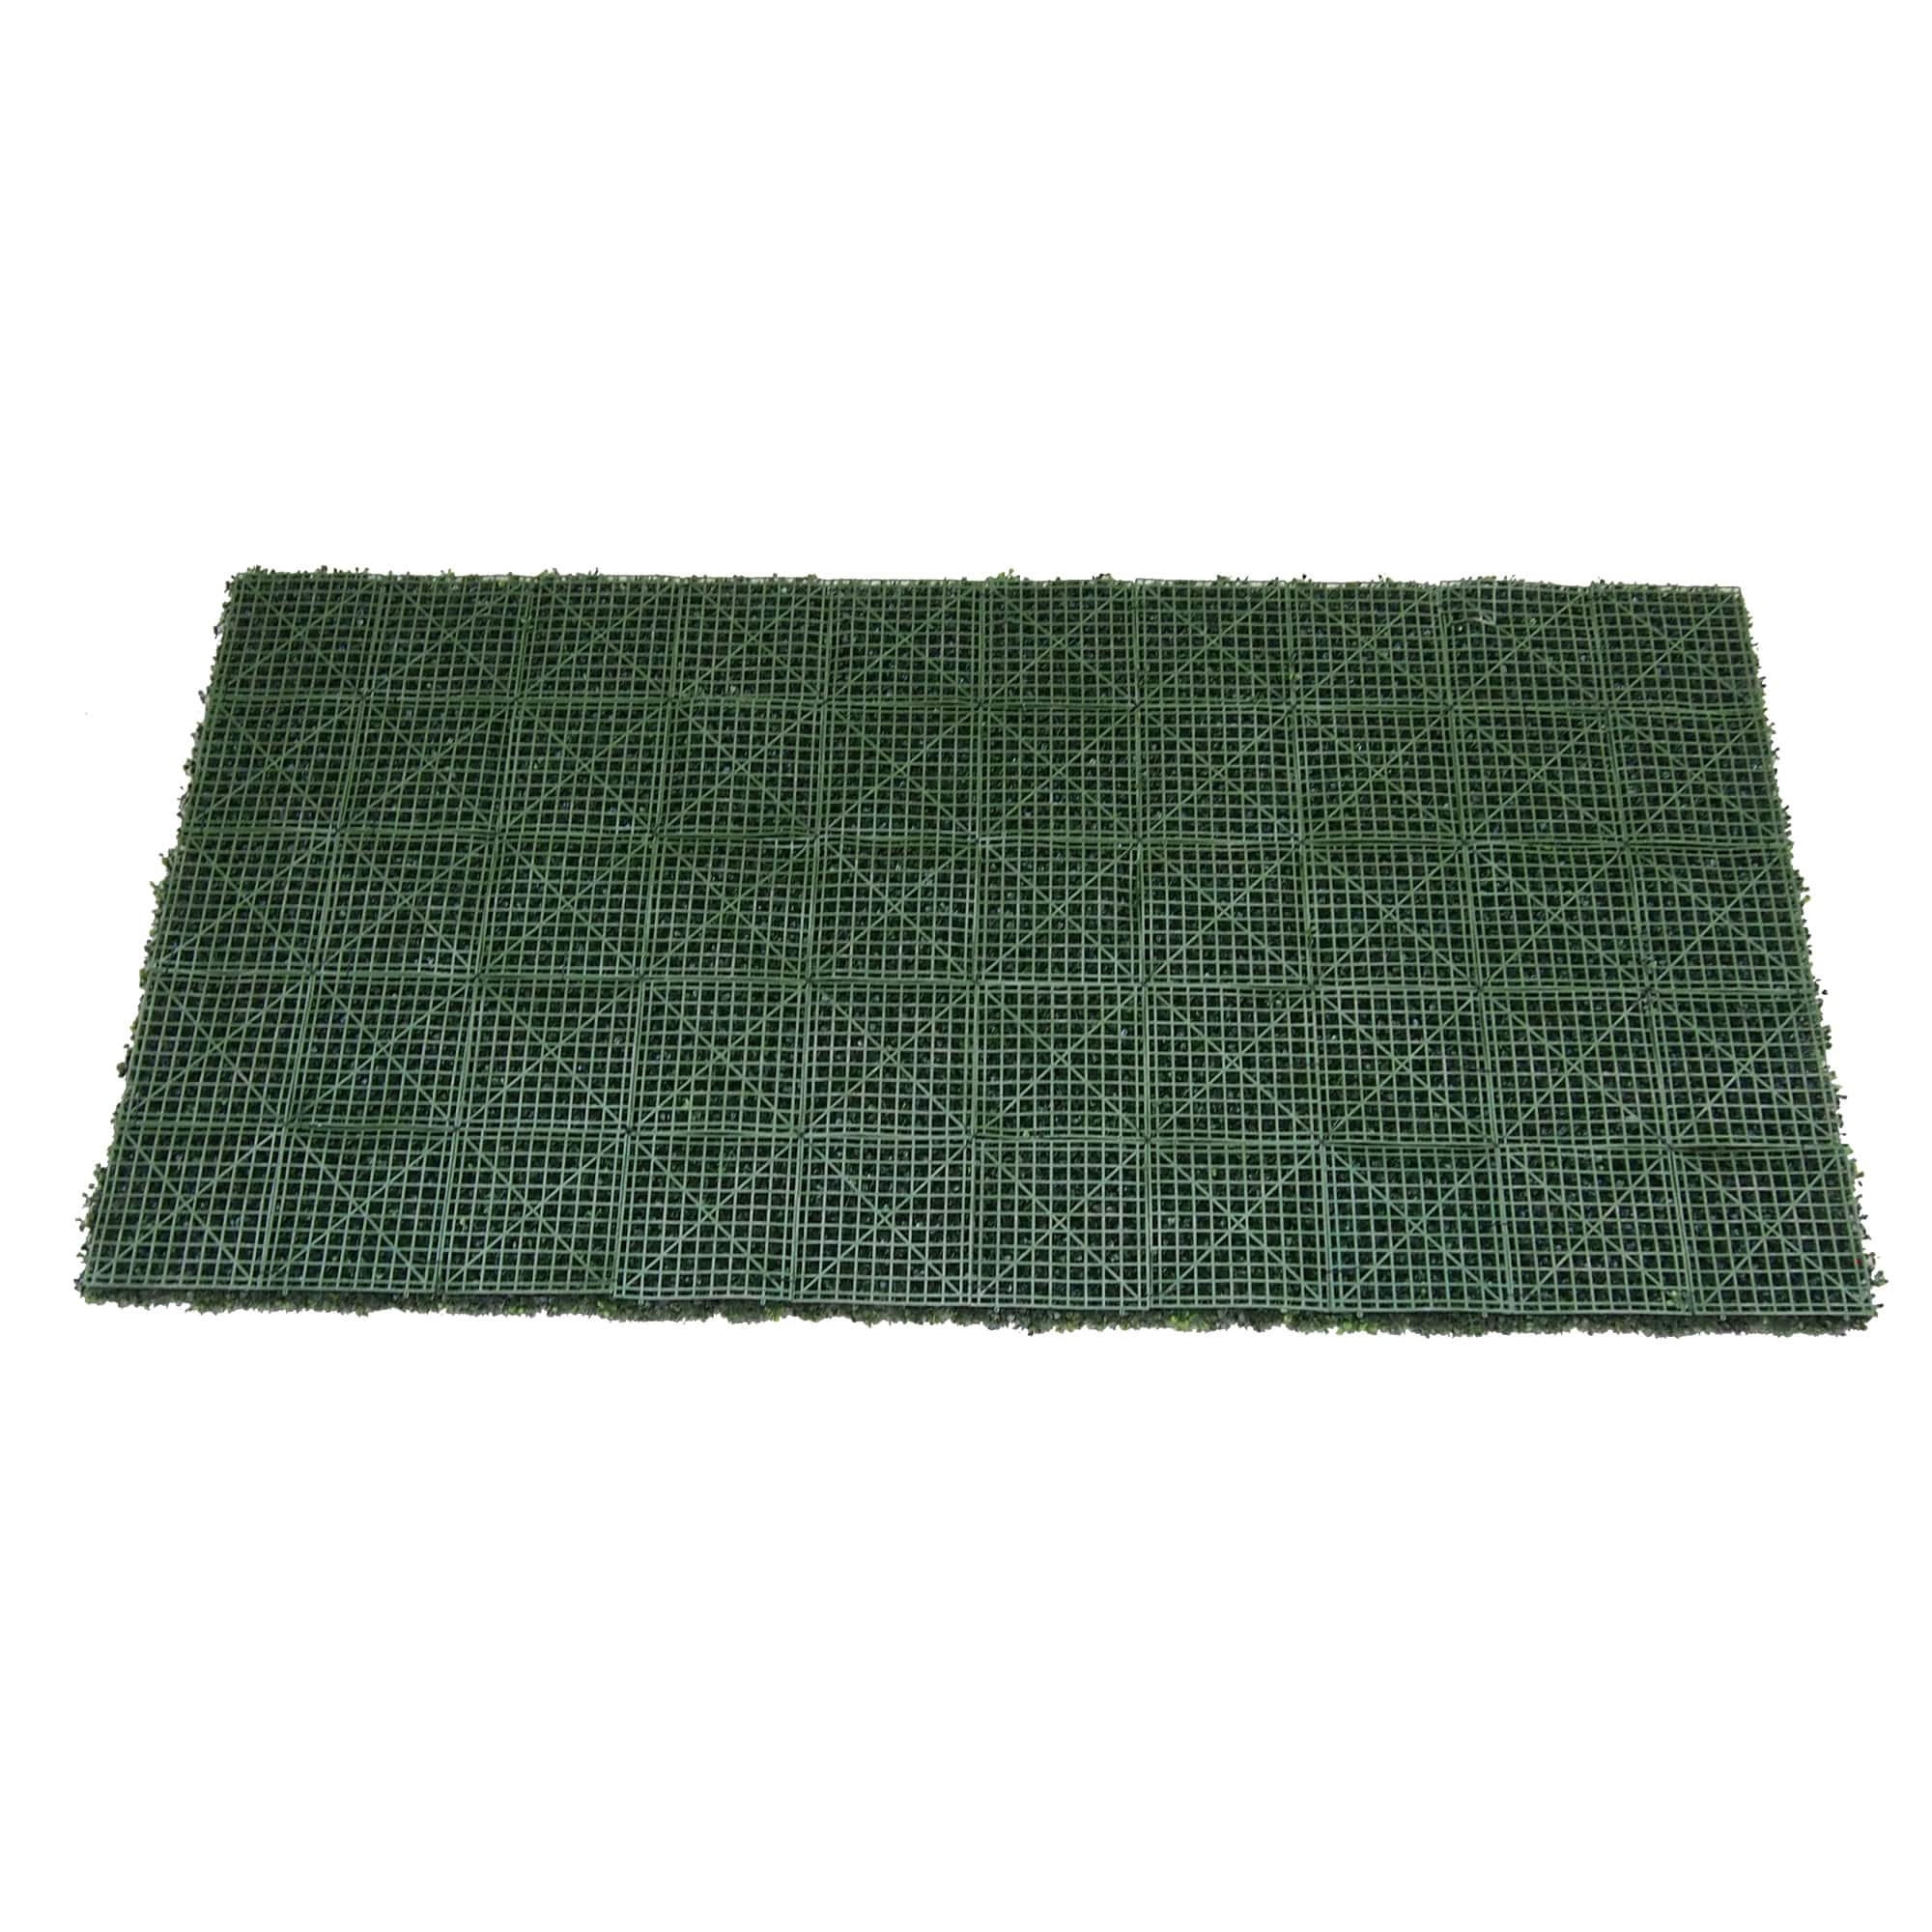 Green Artificial Boxwood Mat